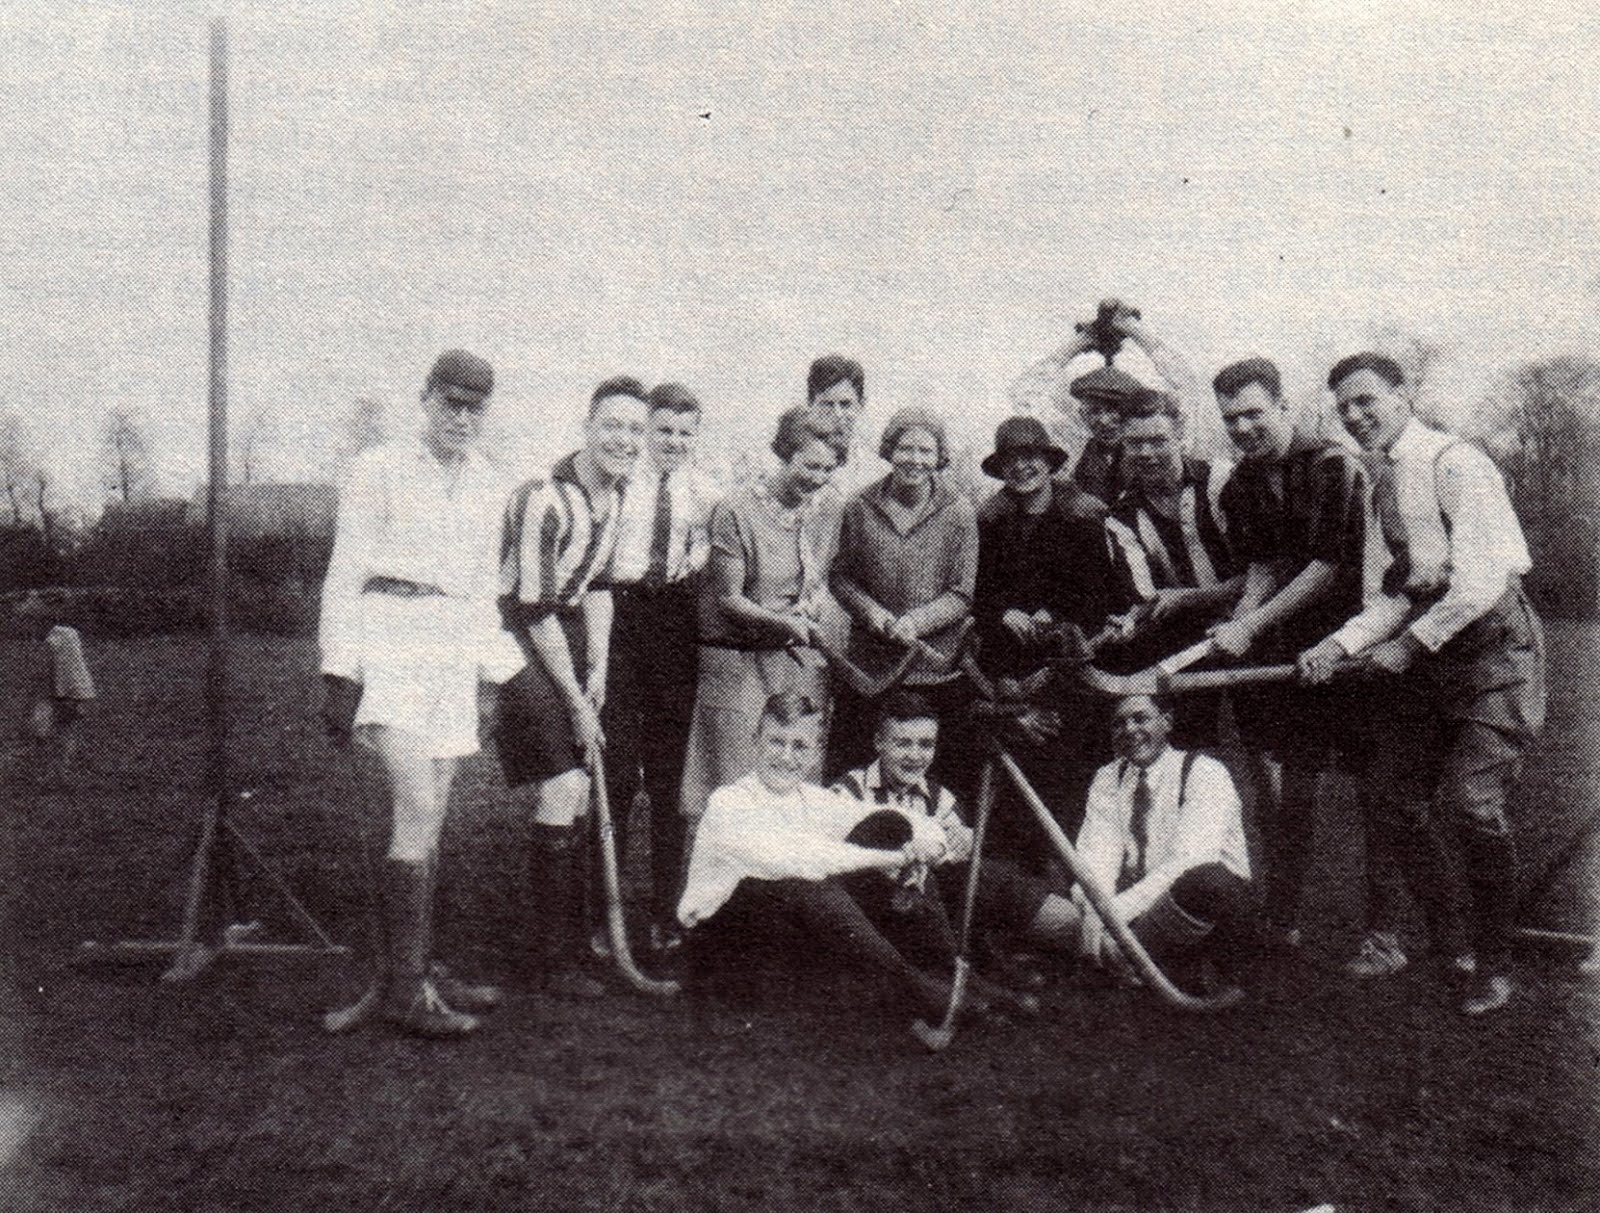 Hockey elftal van De Munnik eind jaren twintig